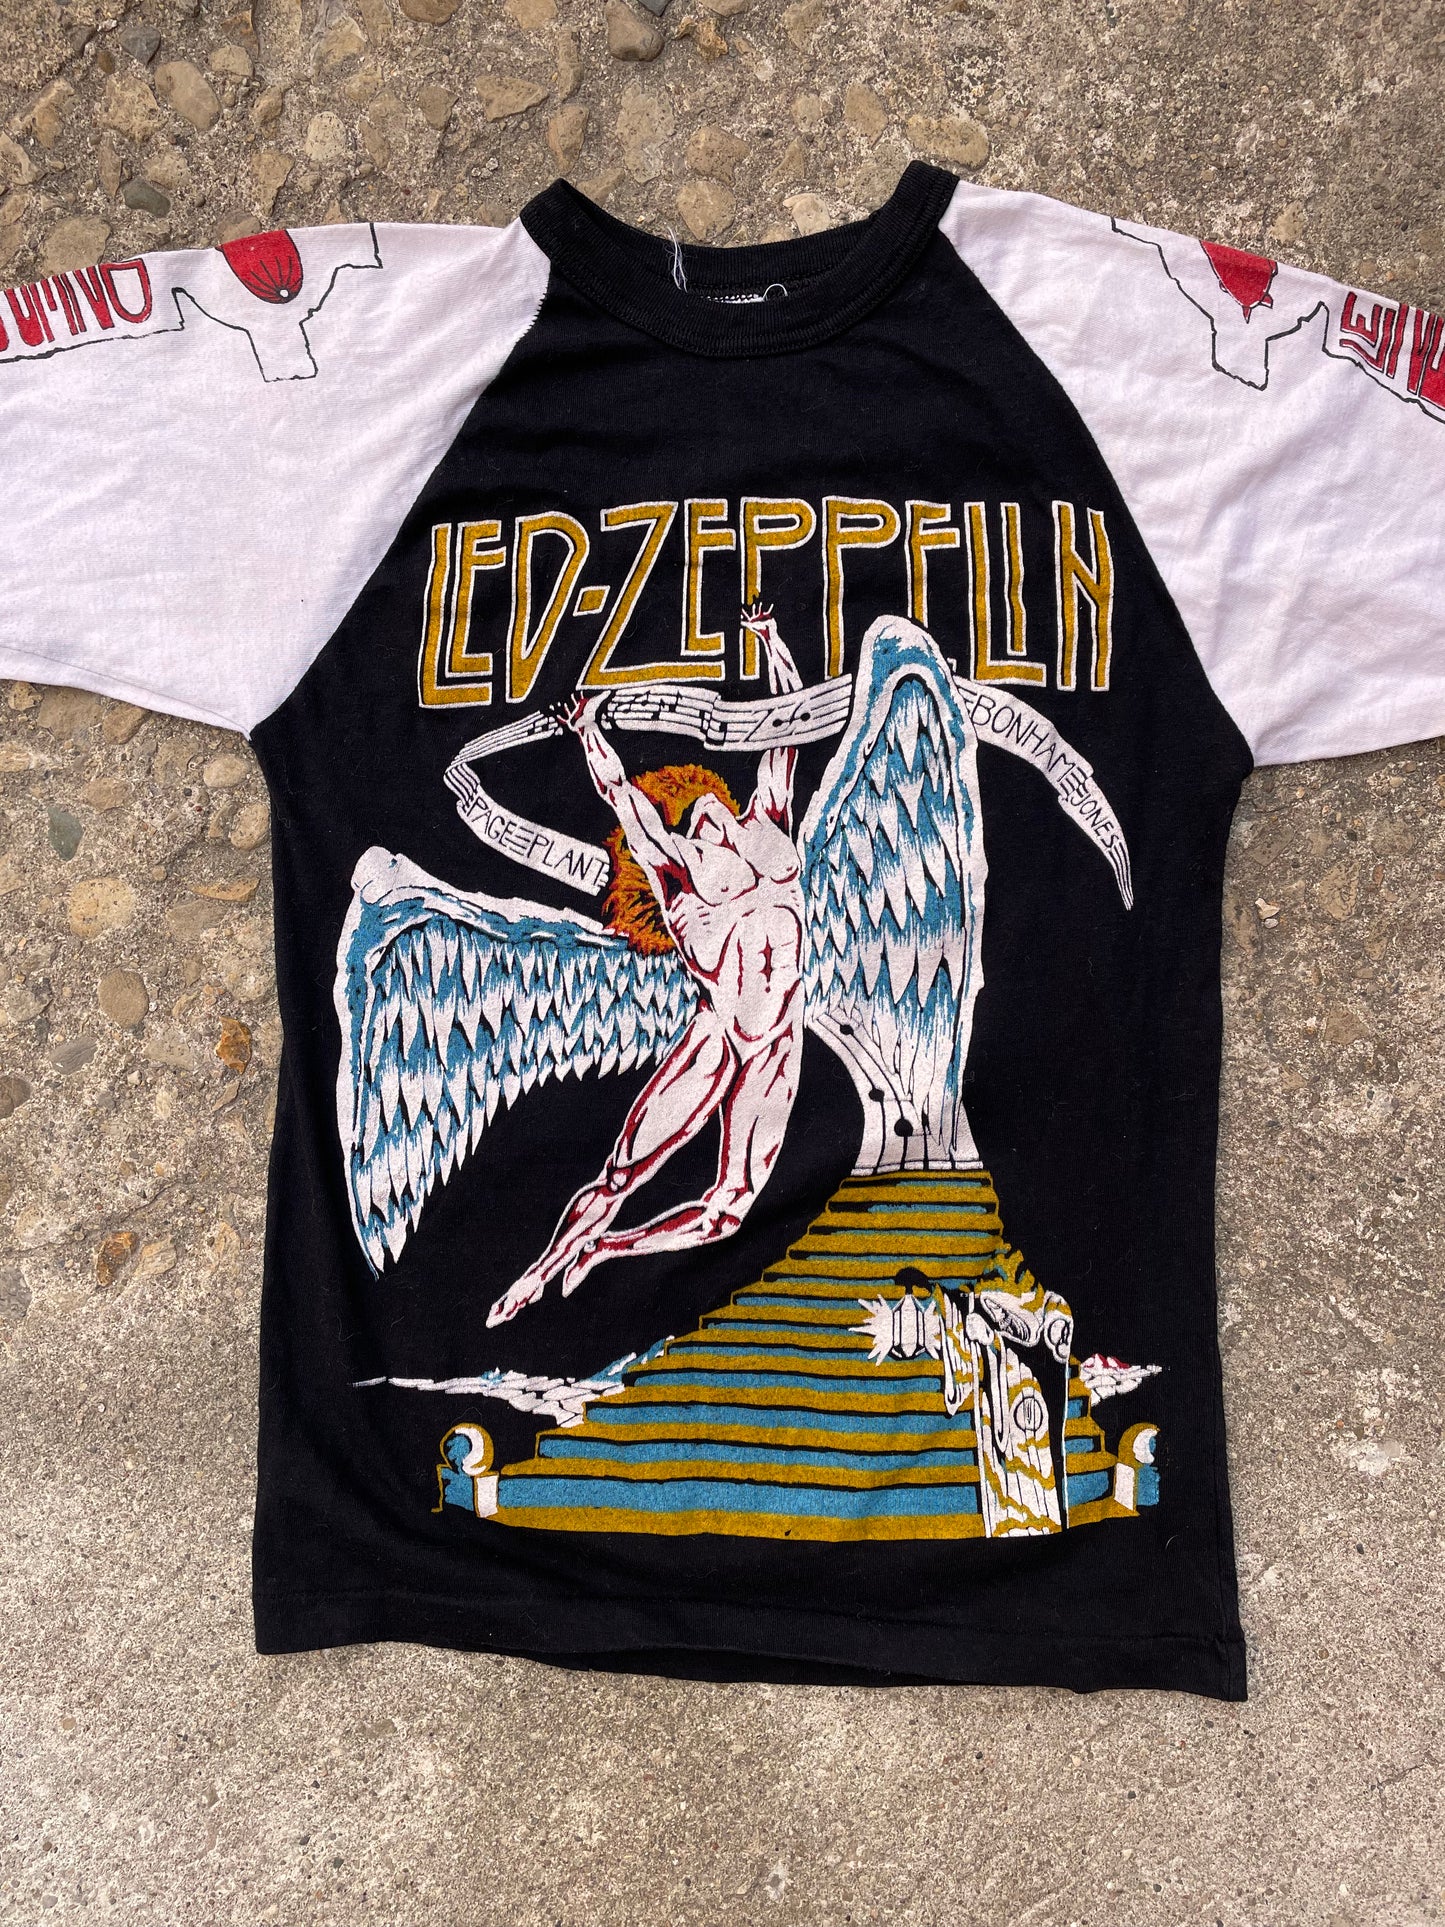 1980's Led Zeppelin Forever Band T-Shirt - S